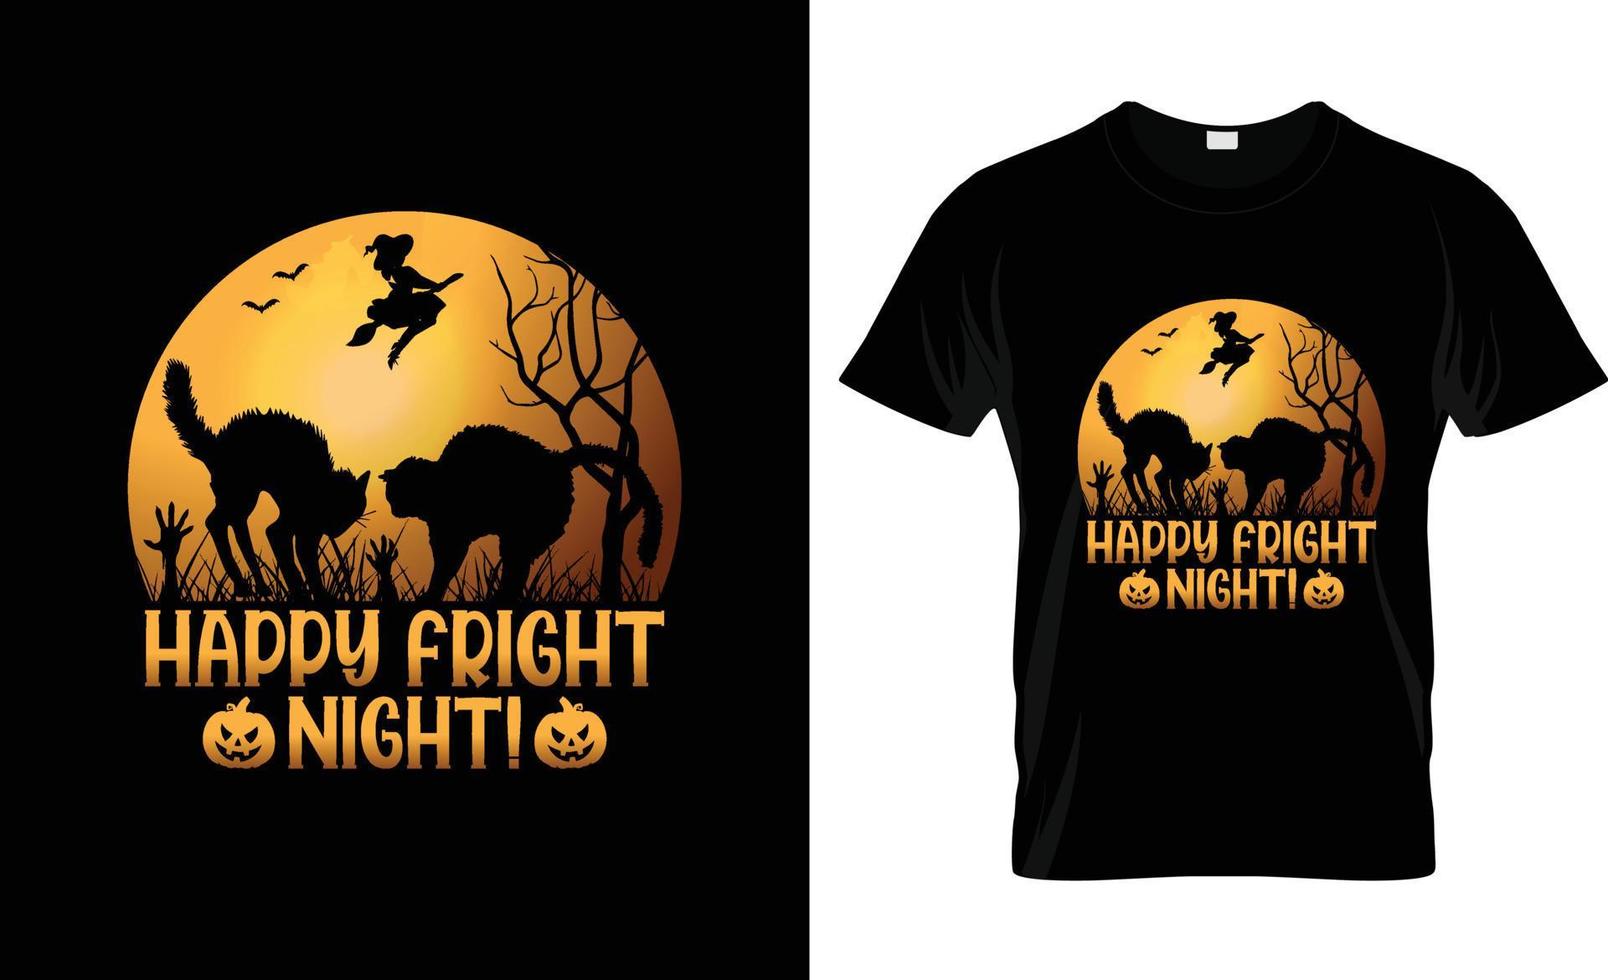 diseño de camisetas de halloween, eslogan de camisetas de halloween y diseño de prendas de vestir, tipografía de halloween, vector de halloween, ilustración de halloween